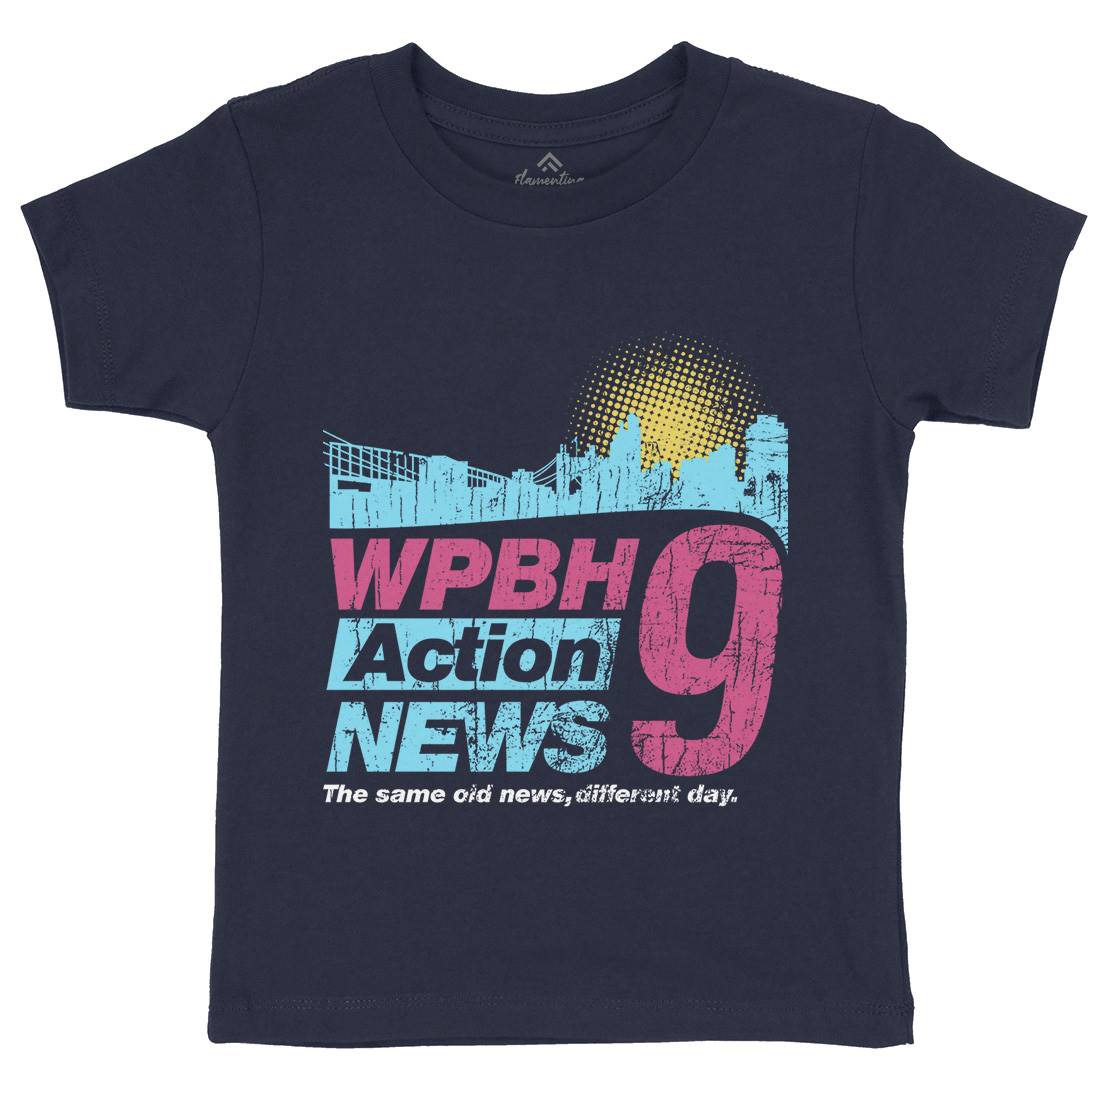 Wpbh Action Kids Crew Neck T-Shirt Retro D342